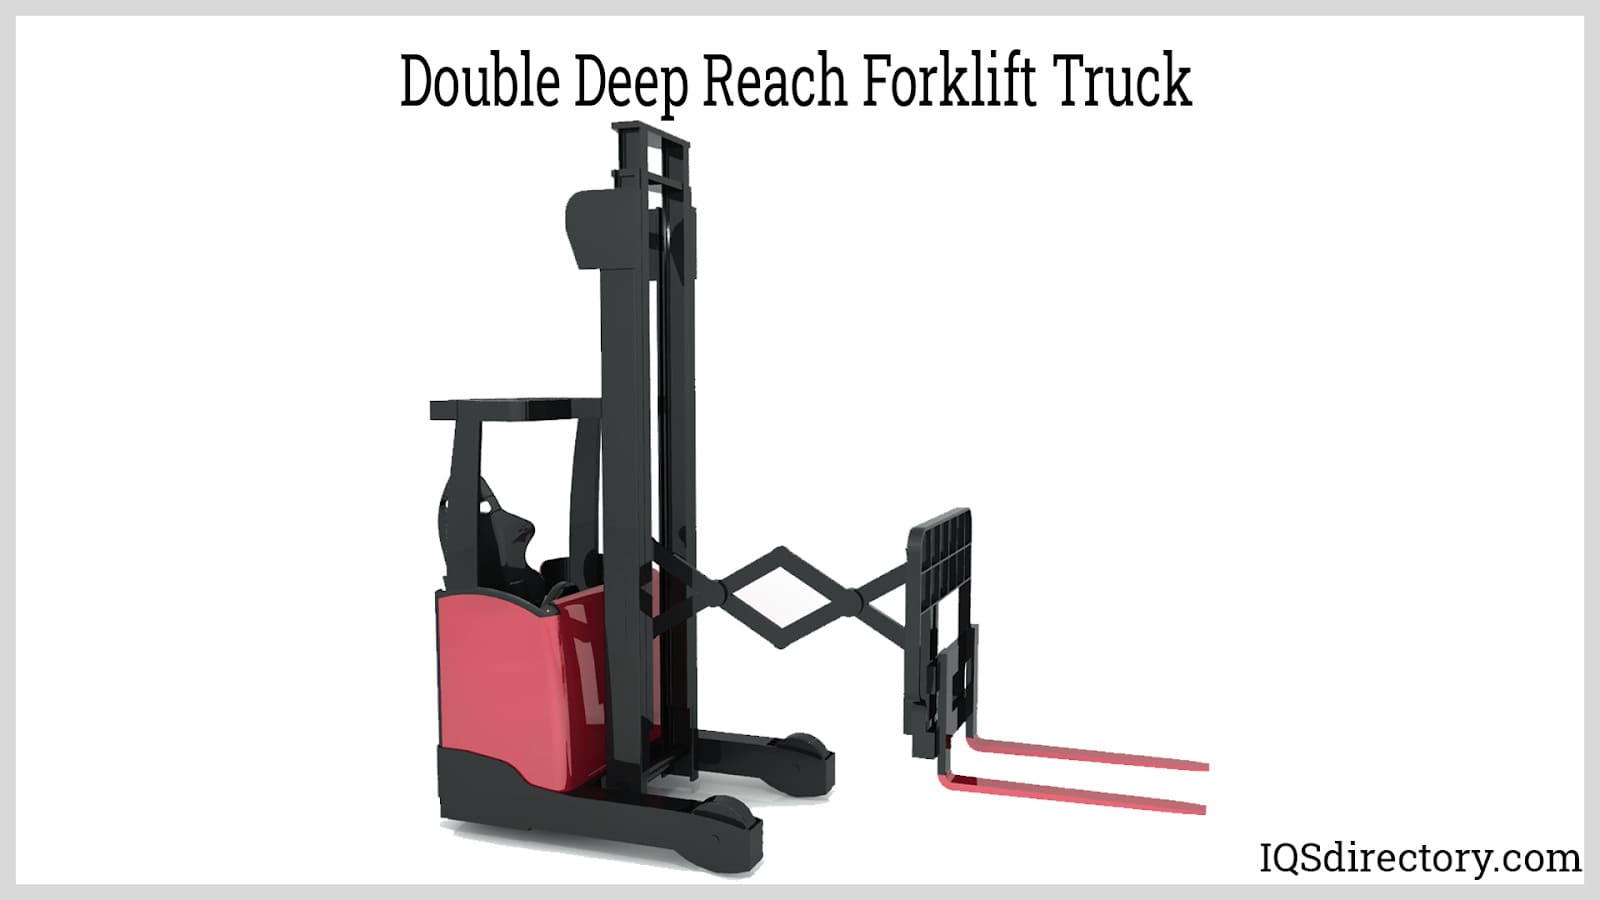 Double Deep Reach Forklift Truck